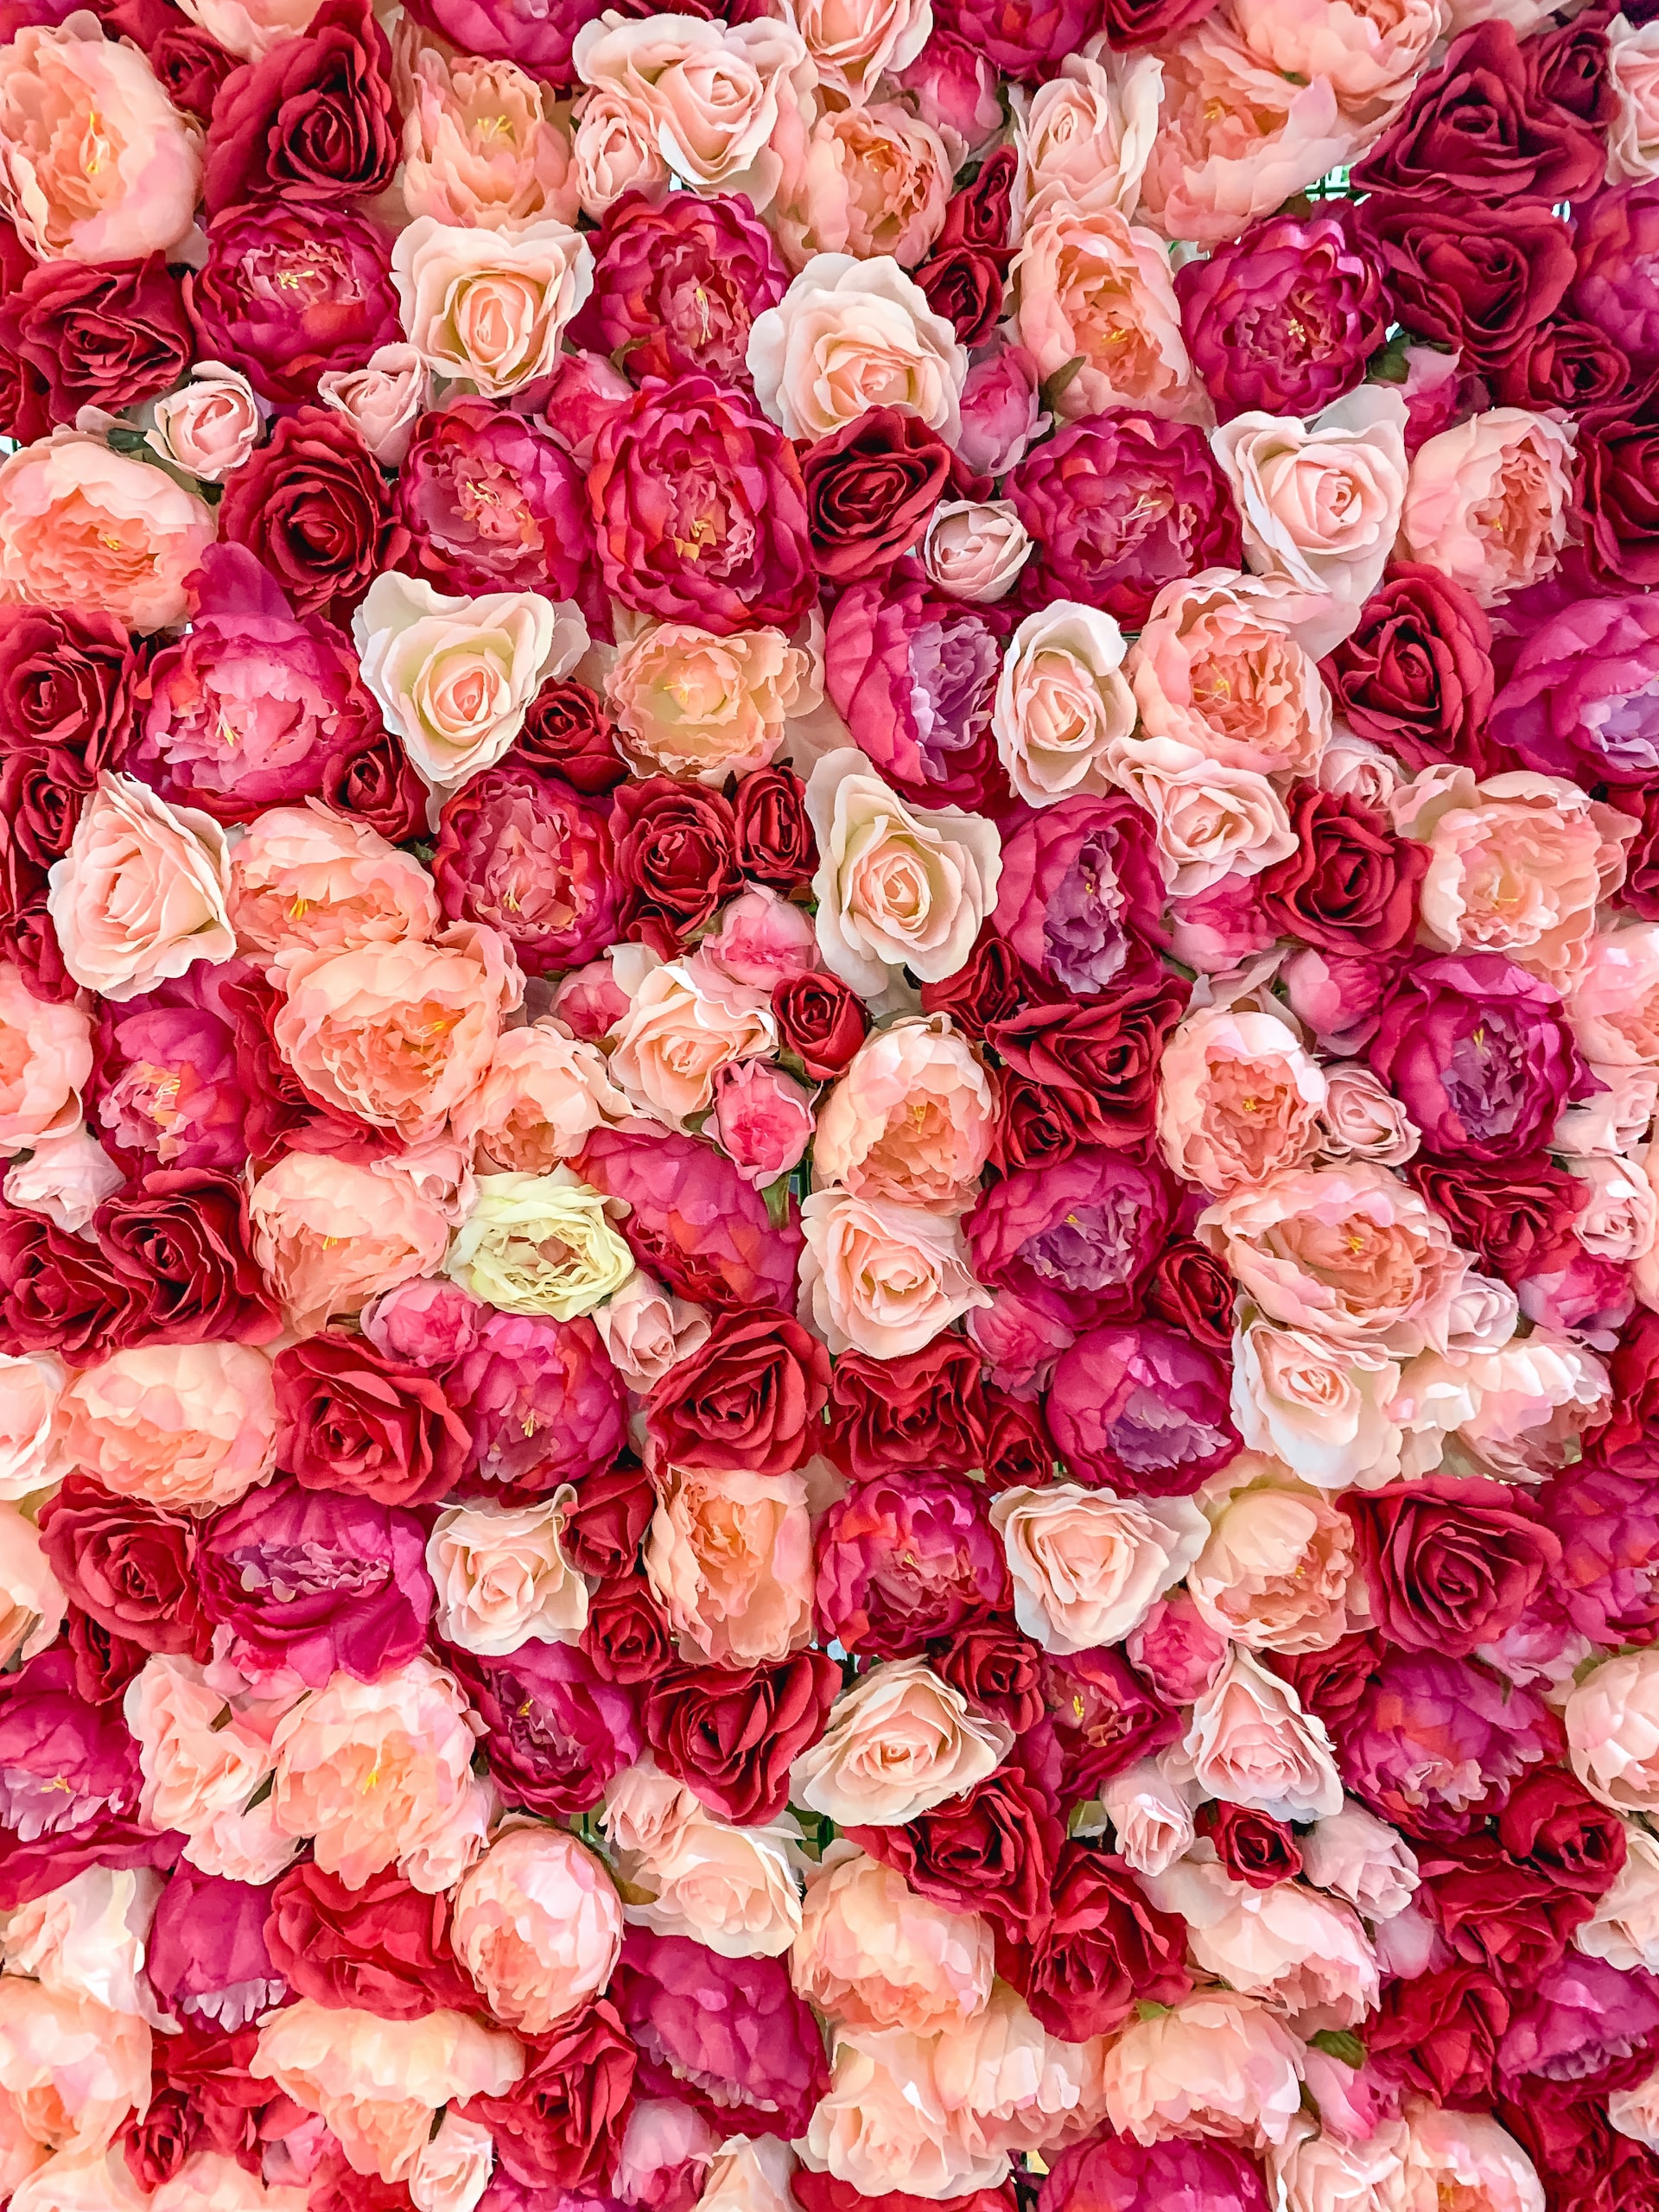 Kaufe rosa Rosen für verschiedene Anlässe